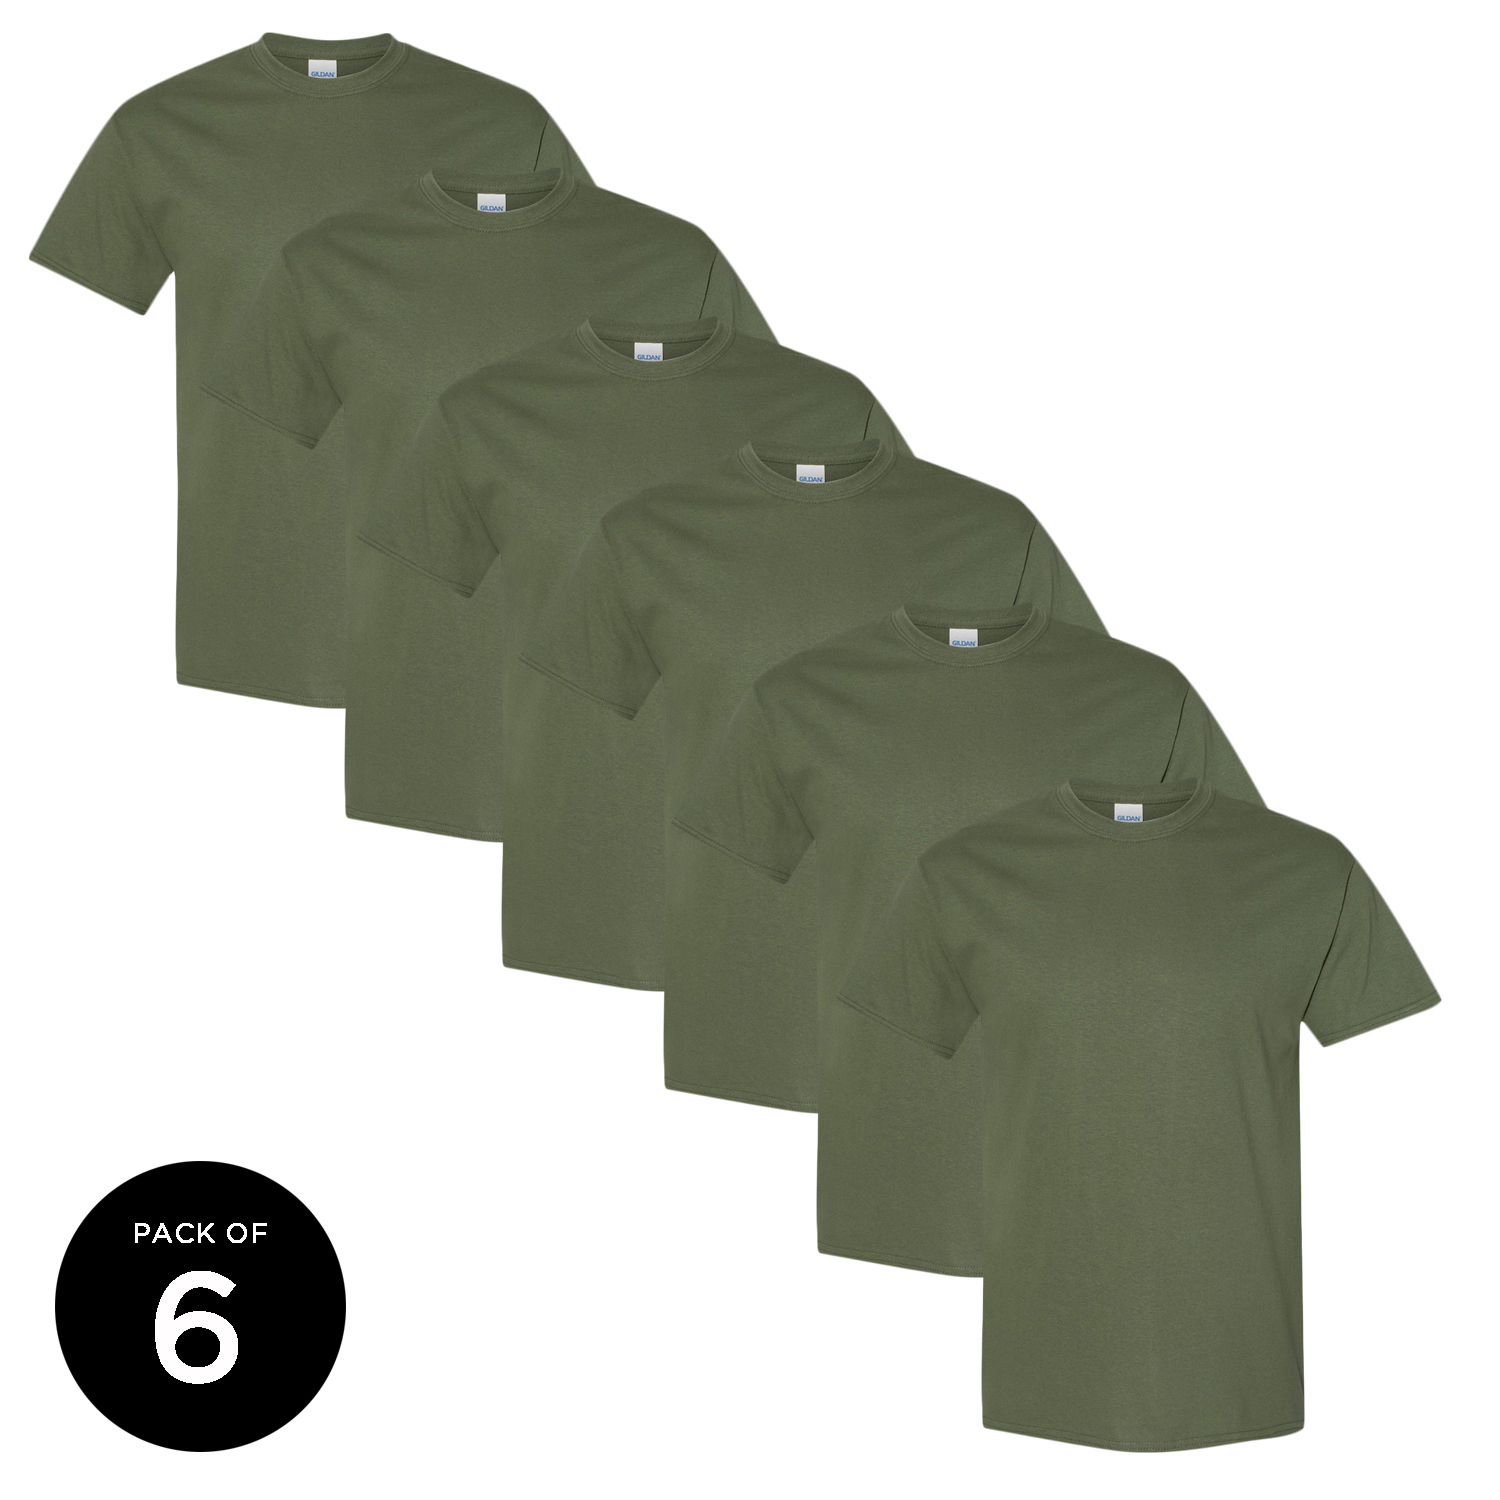 Gildan Men Military Green T-Shirts Value Pack Shirts for Men - Single OR Pack of 6 OR Pack of 12 Military Shirts for Men Gildan T-shirts for Men T-shirt Casual Shirt Basic Shirts - image 1 of 4